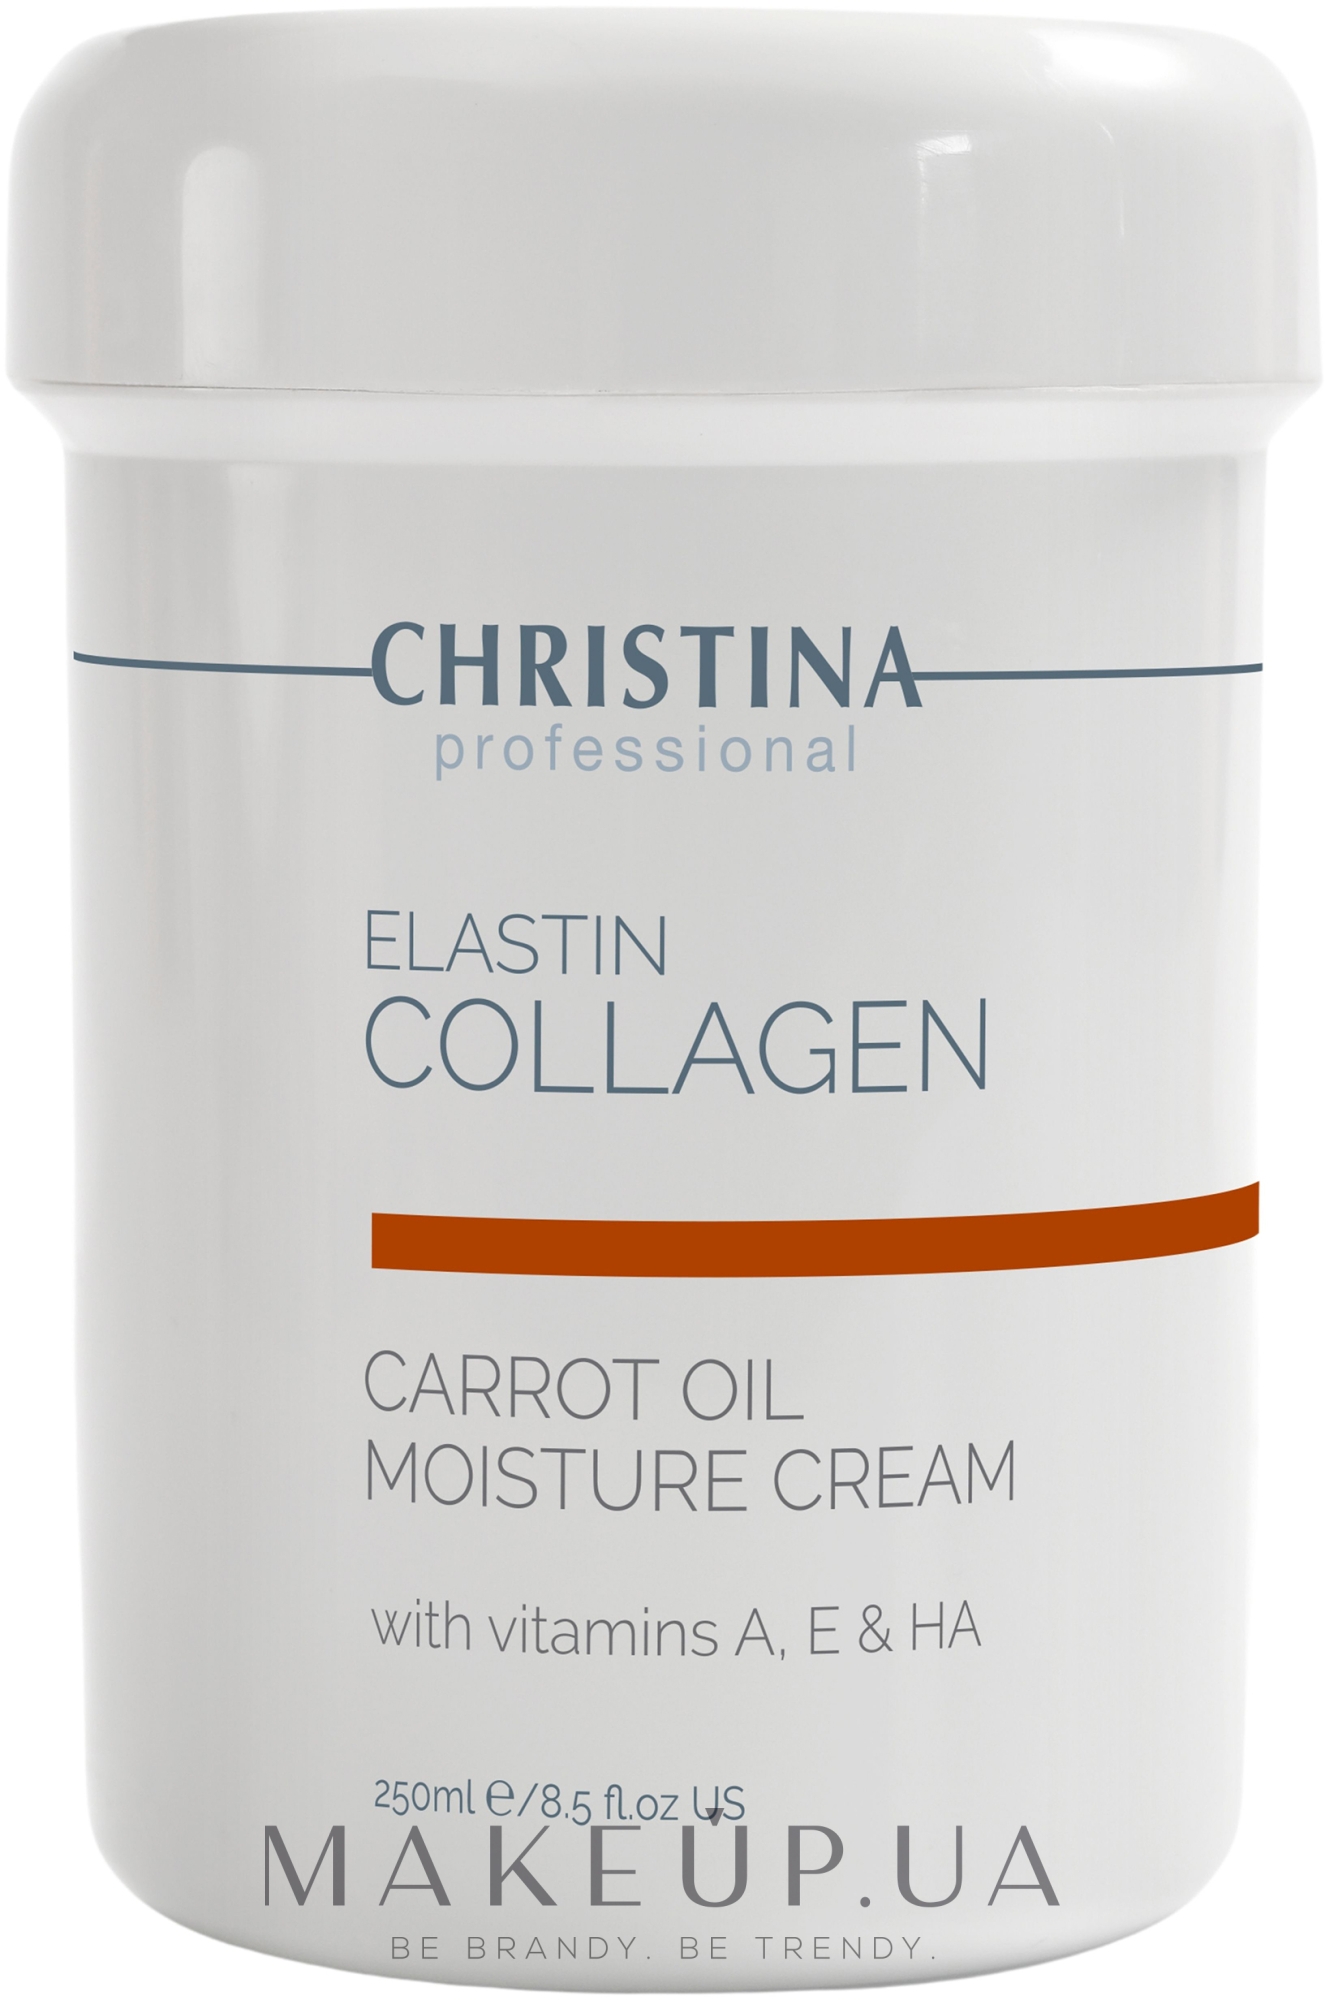 Увлажняющий крем с морковным маслом, коллагеном и эластином для сухой кожи - Christina Elastin Collagen Carrot Oil Moisture Cream — фото 250ml